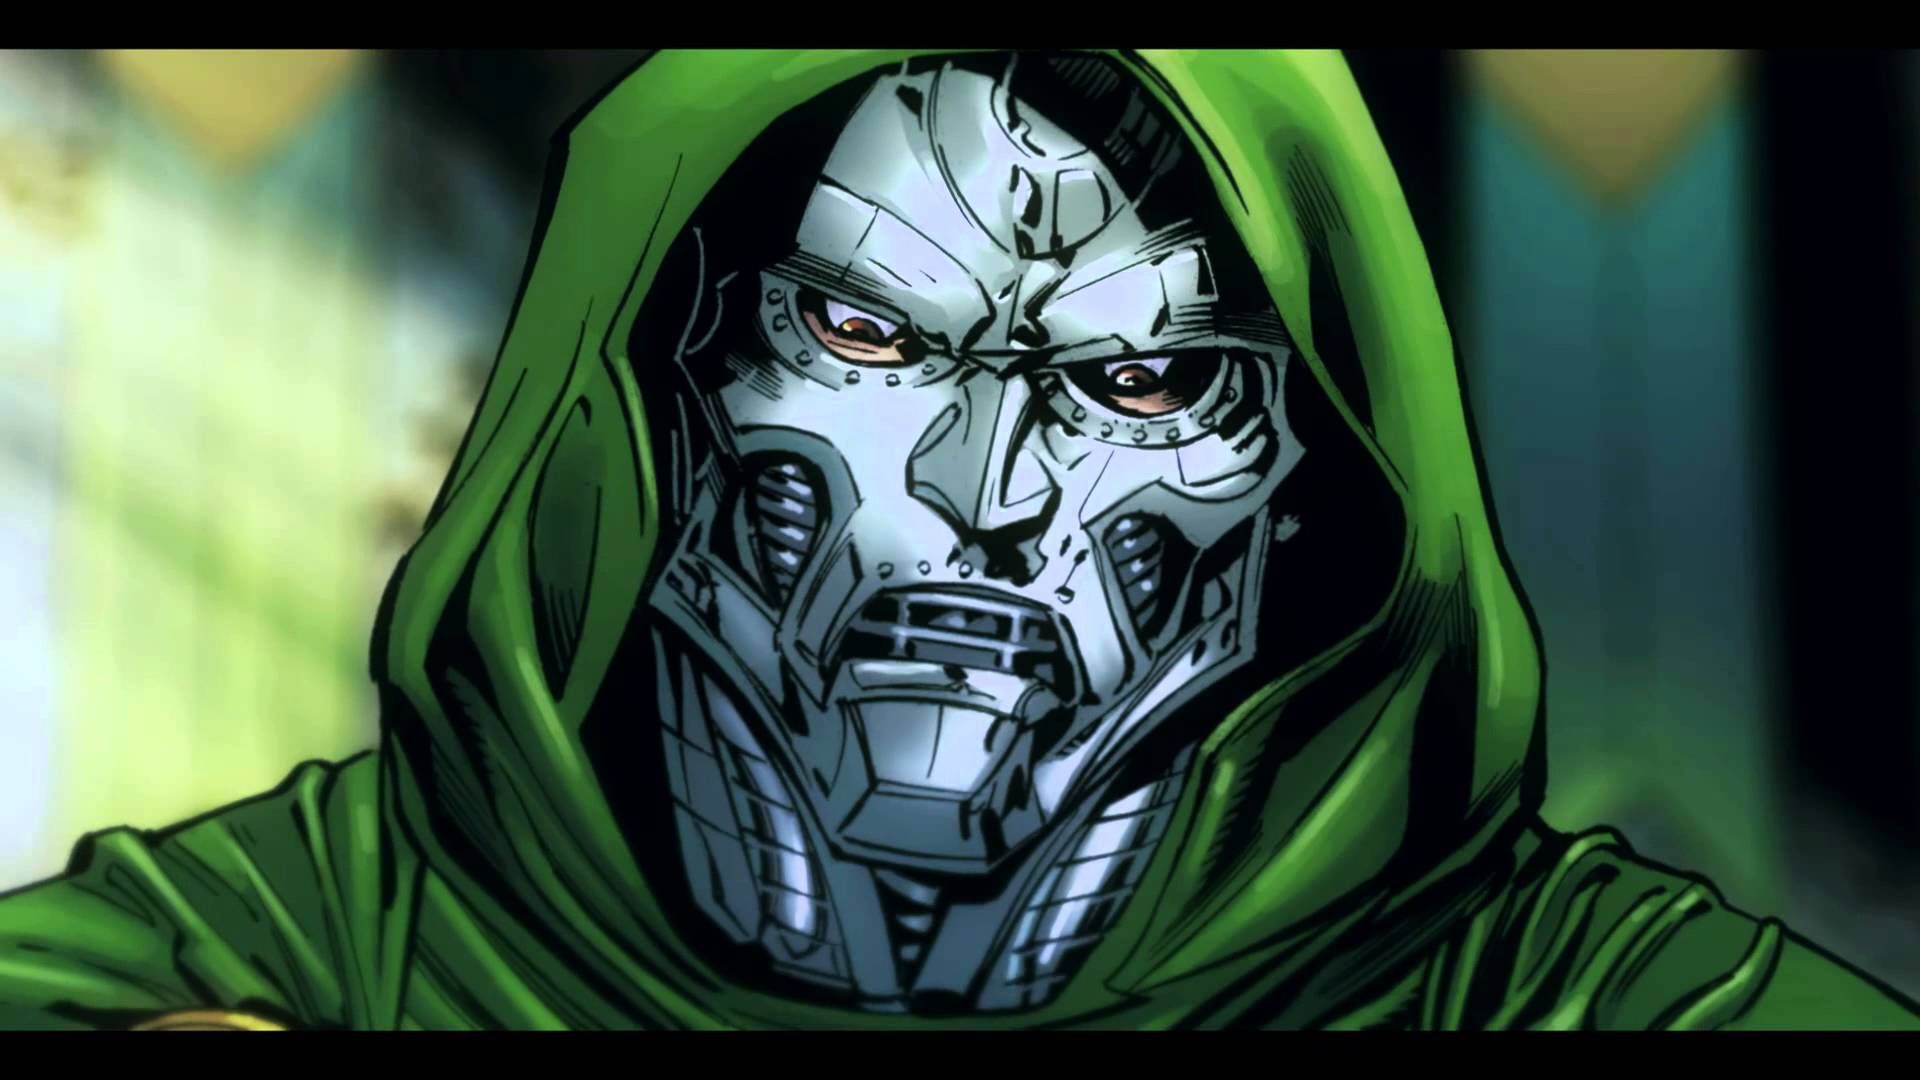 Doctor Doom, The Fantastic Four's greatest villain